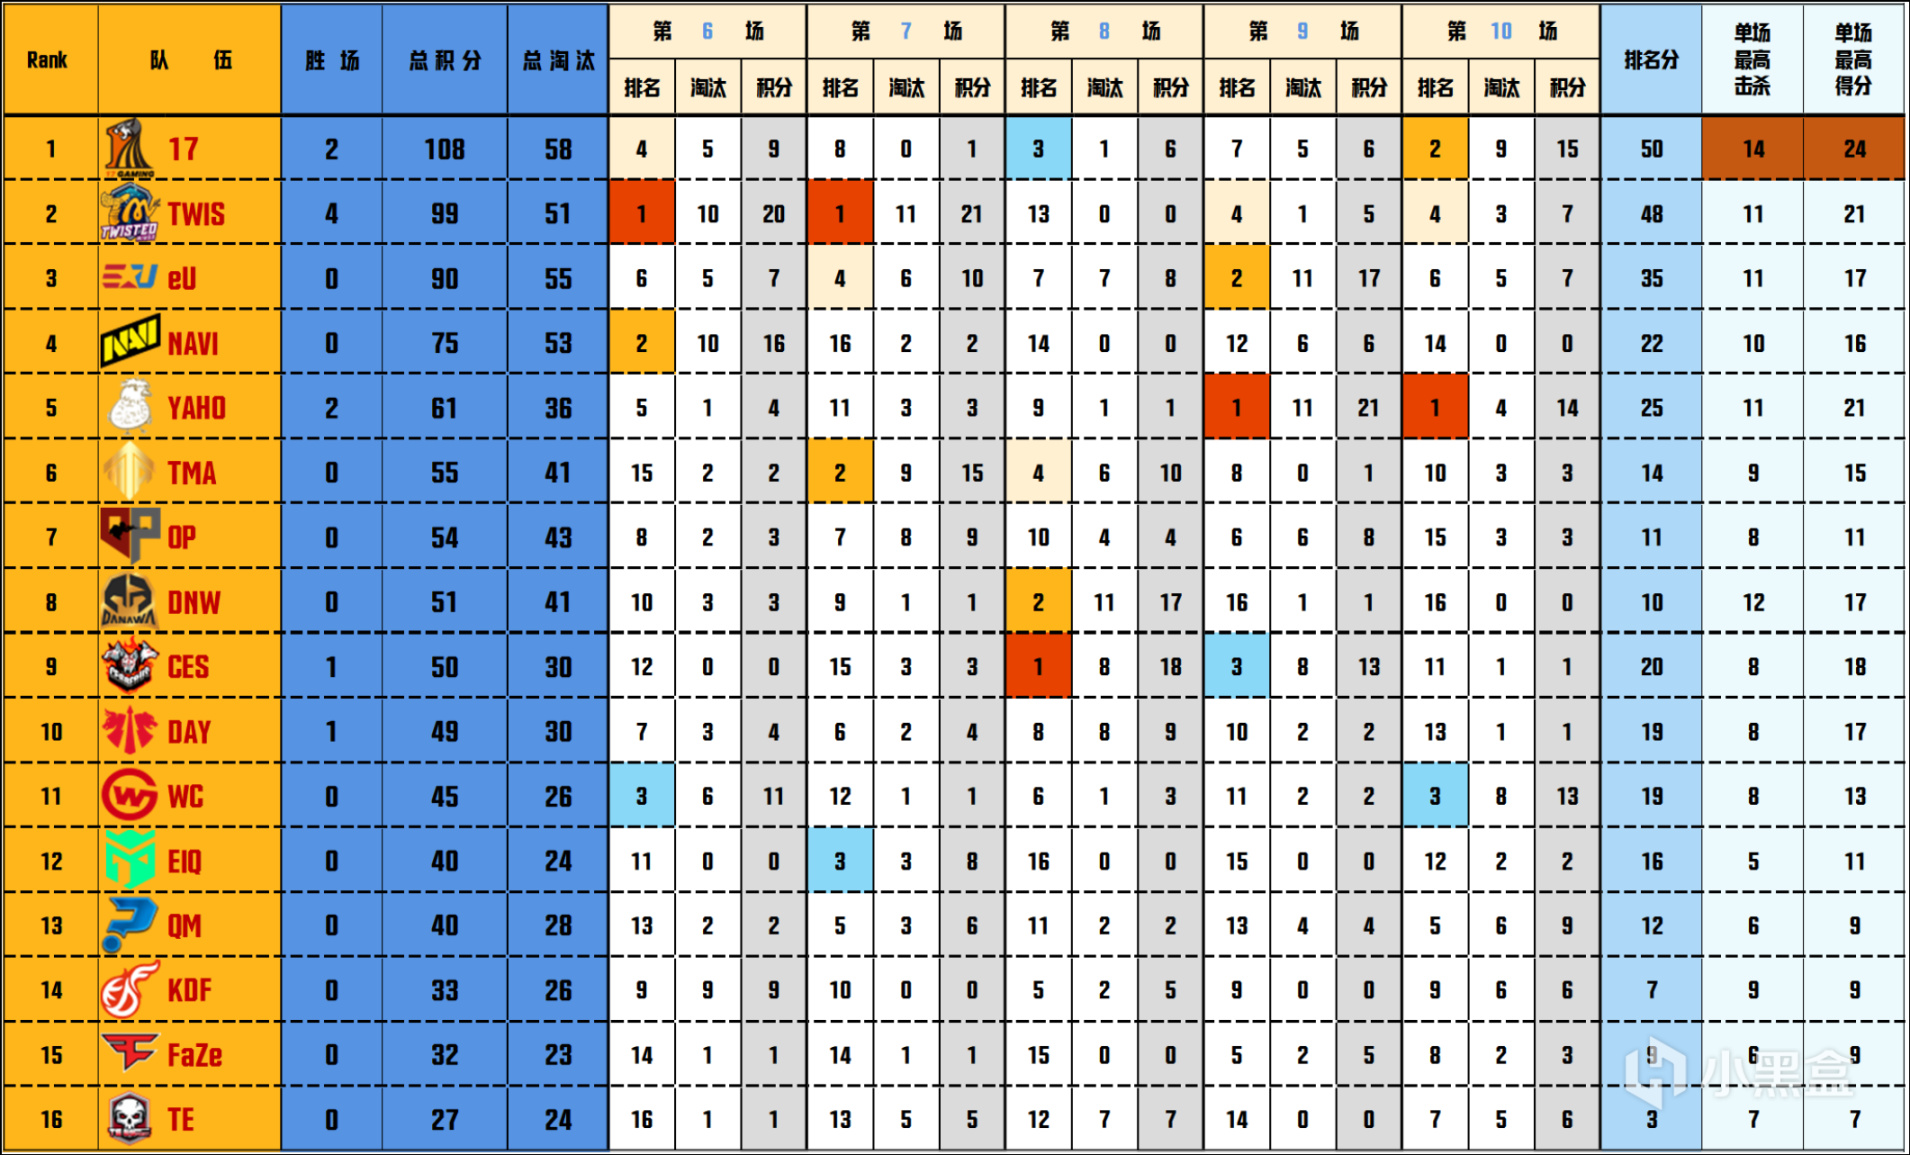 【数据流】PGC决赛D2/4,17 108分继续领跑,DNW_seoul战神20淘汰-第1张